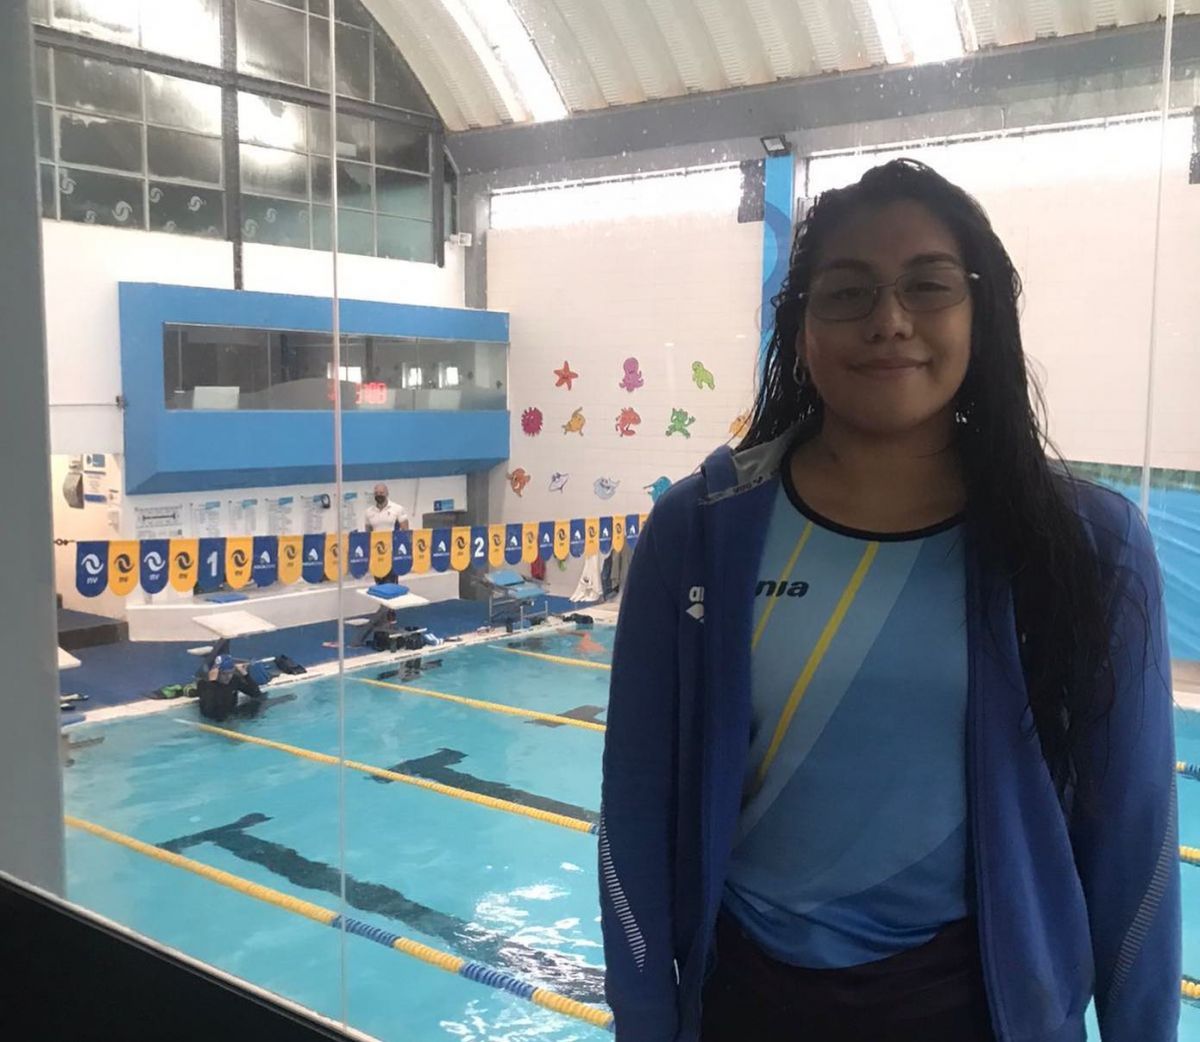  La nadadora Mayte  Puca busca apoyo para competir internacionalmente